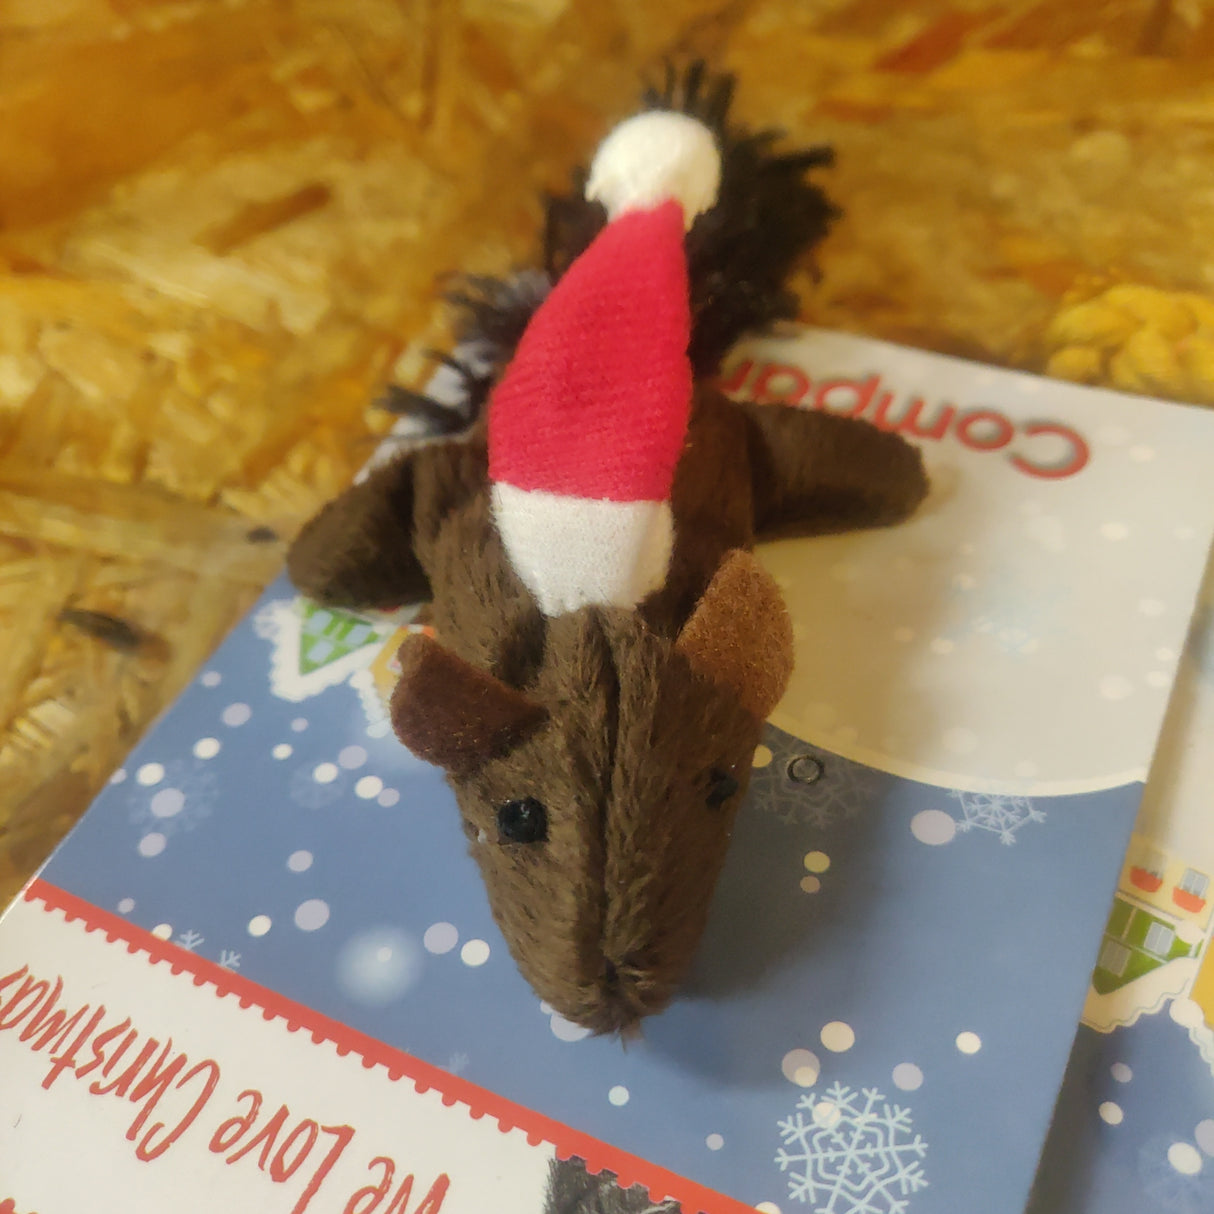 ET GOOD BOY udstoppet egern med en nissehue oven på et kort, perfekt som julelegetøj eller gaver.